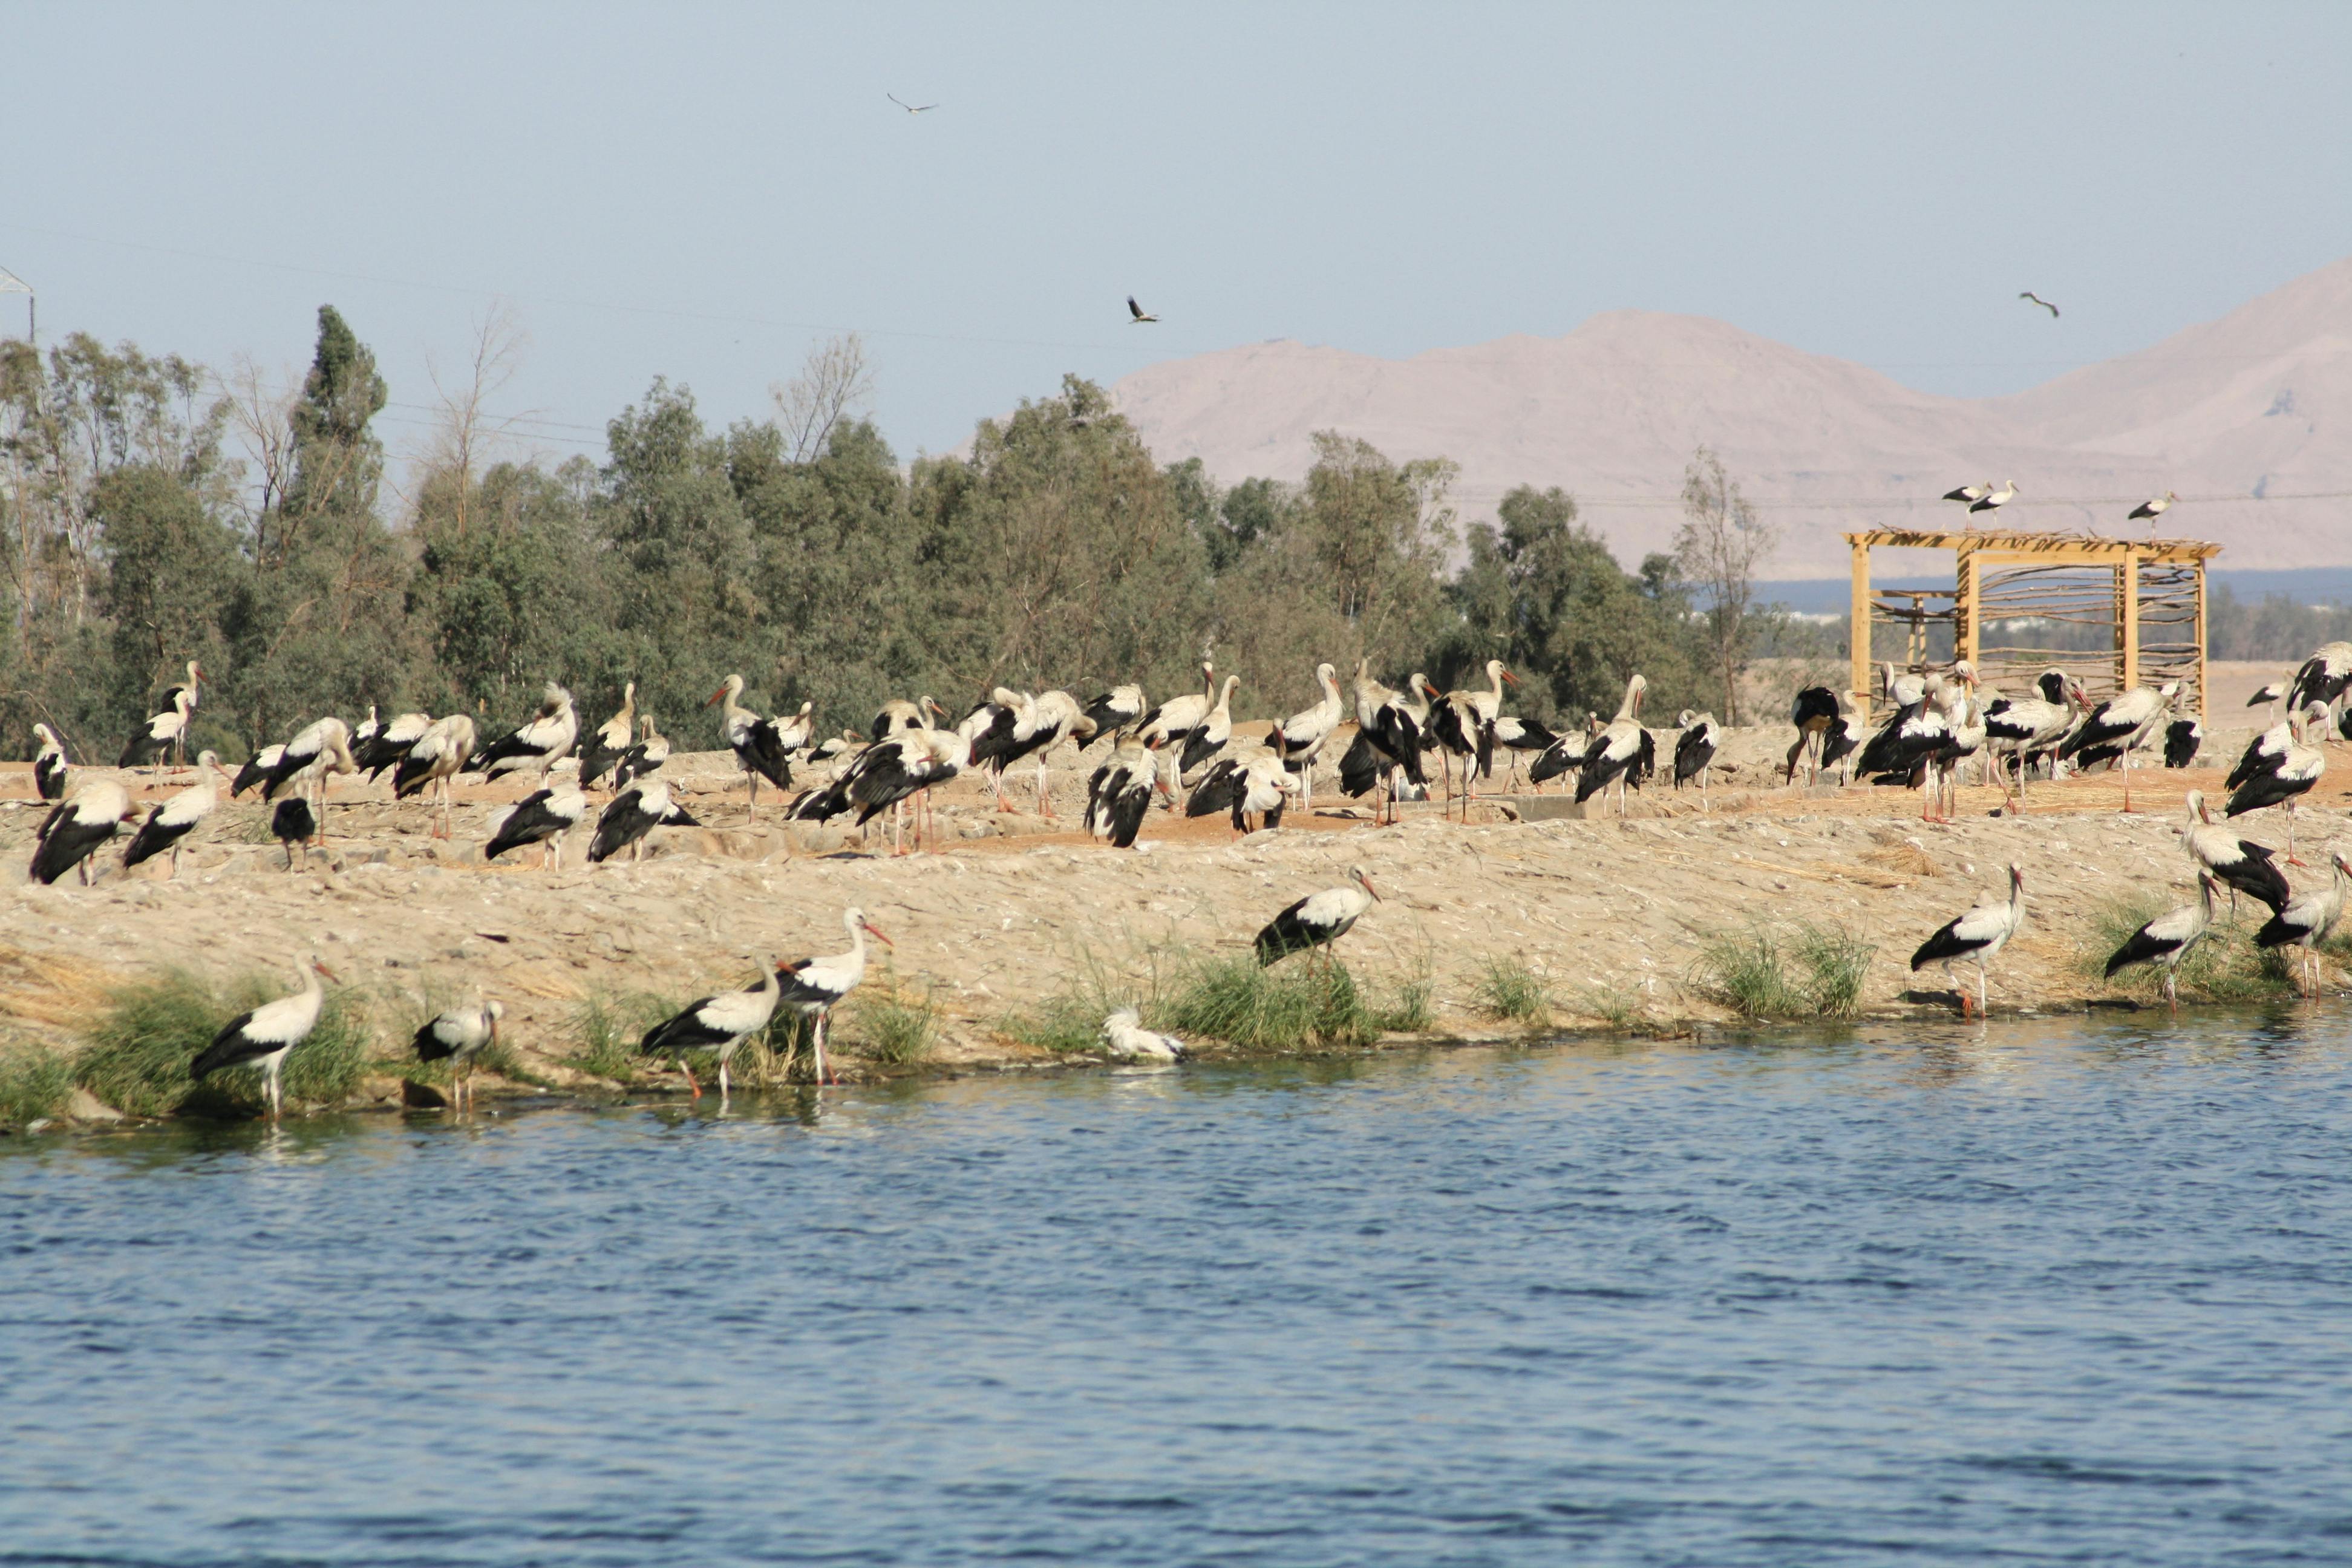 Vogels kijken met zandbuggy-ervaring in Sharm